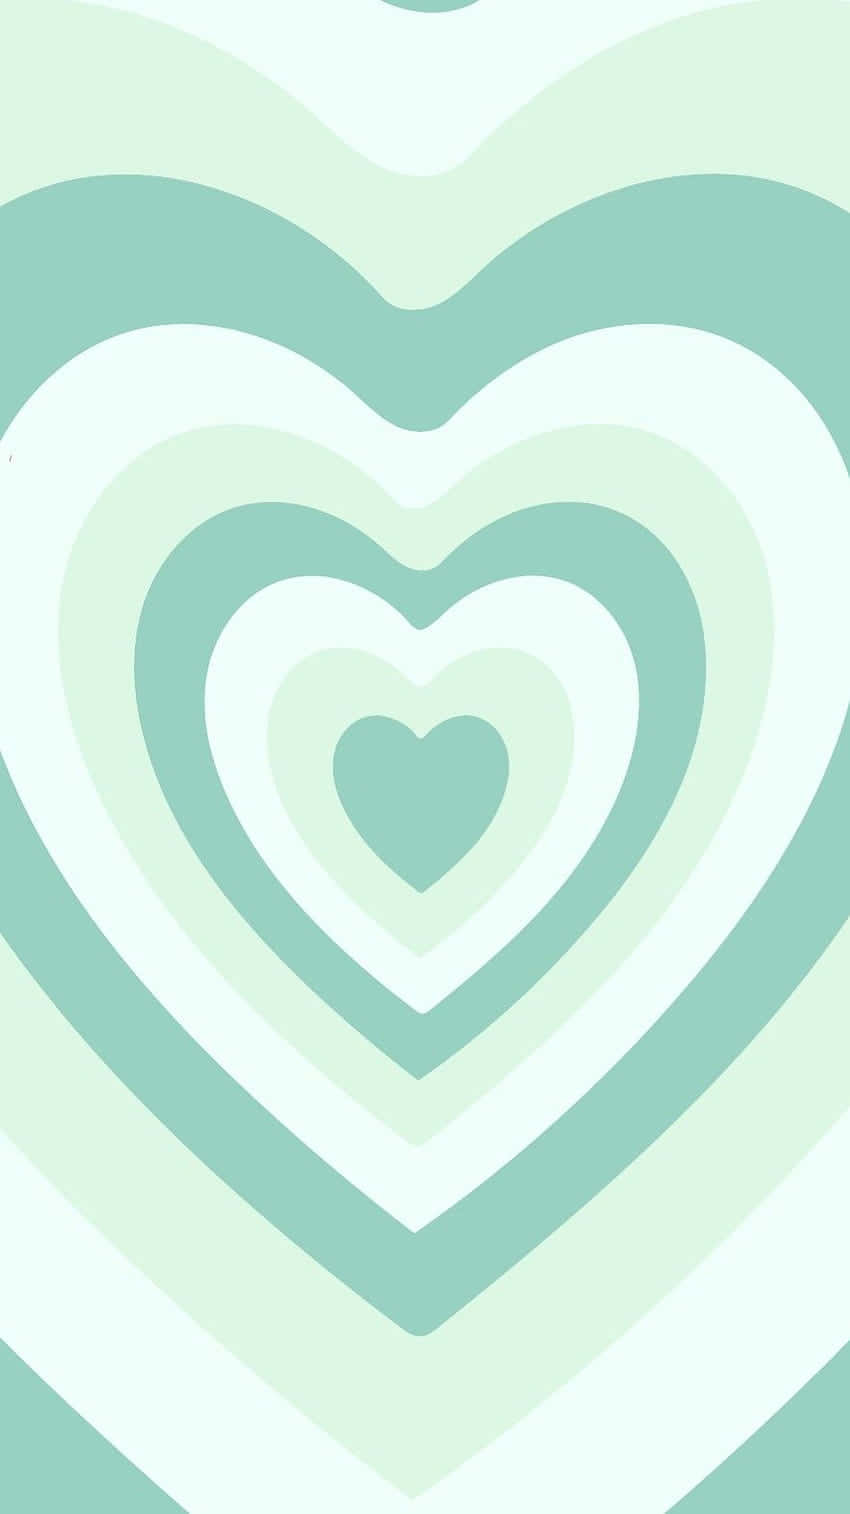 Elsk Grøn - Et par lyse Miint Grøn Hjerter, der symboliserer kærlighed, styrke og venskab. Wallpaper